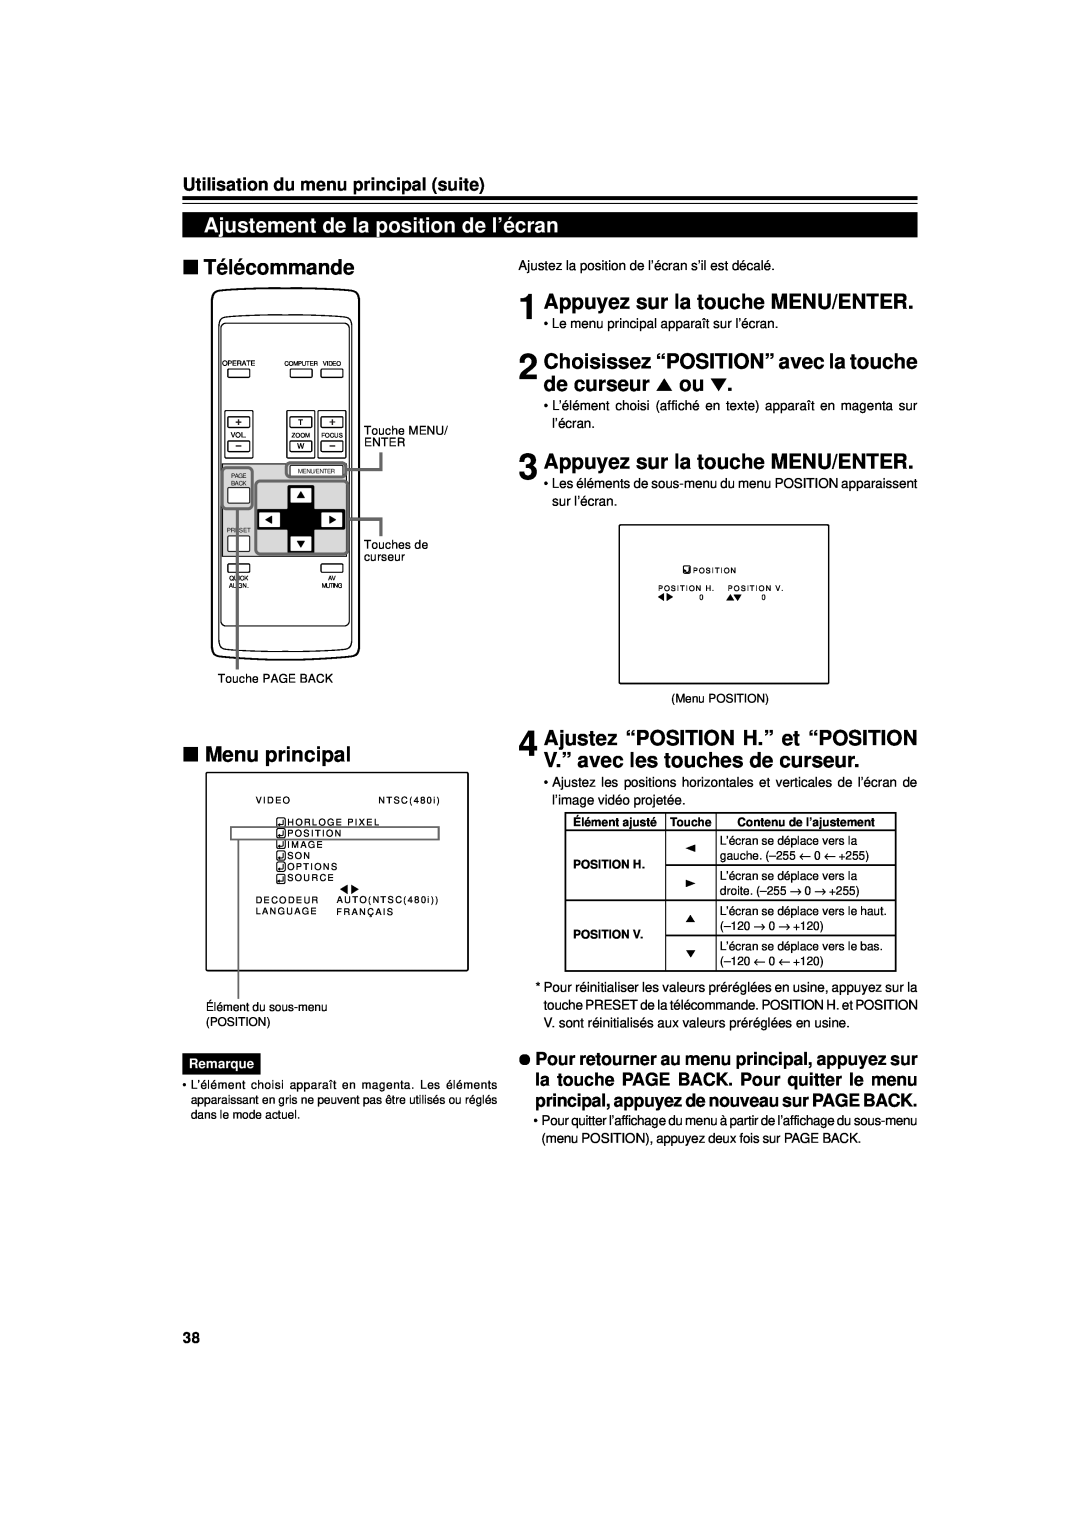 JVC DLA-G11U Ajustement de la position de l’écran, Choisissez “POSITION” avec la touche de curseur 5 ou, Télécommande 